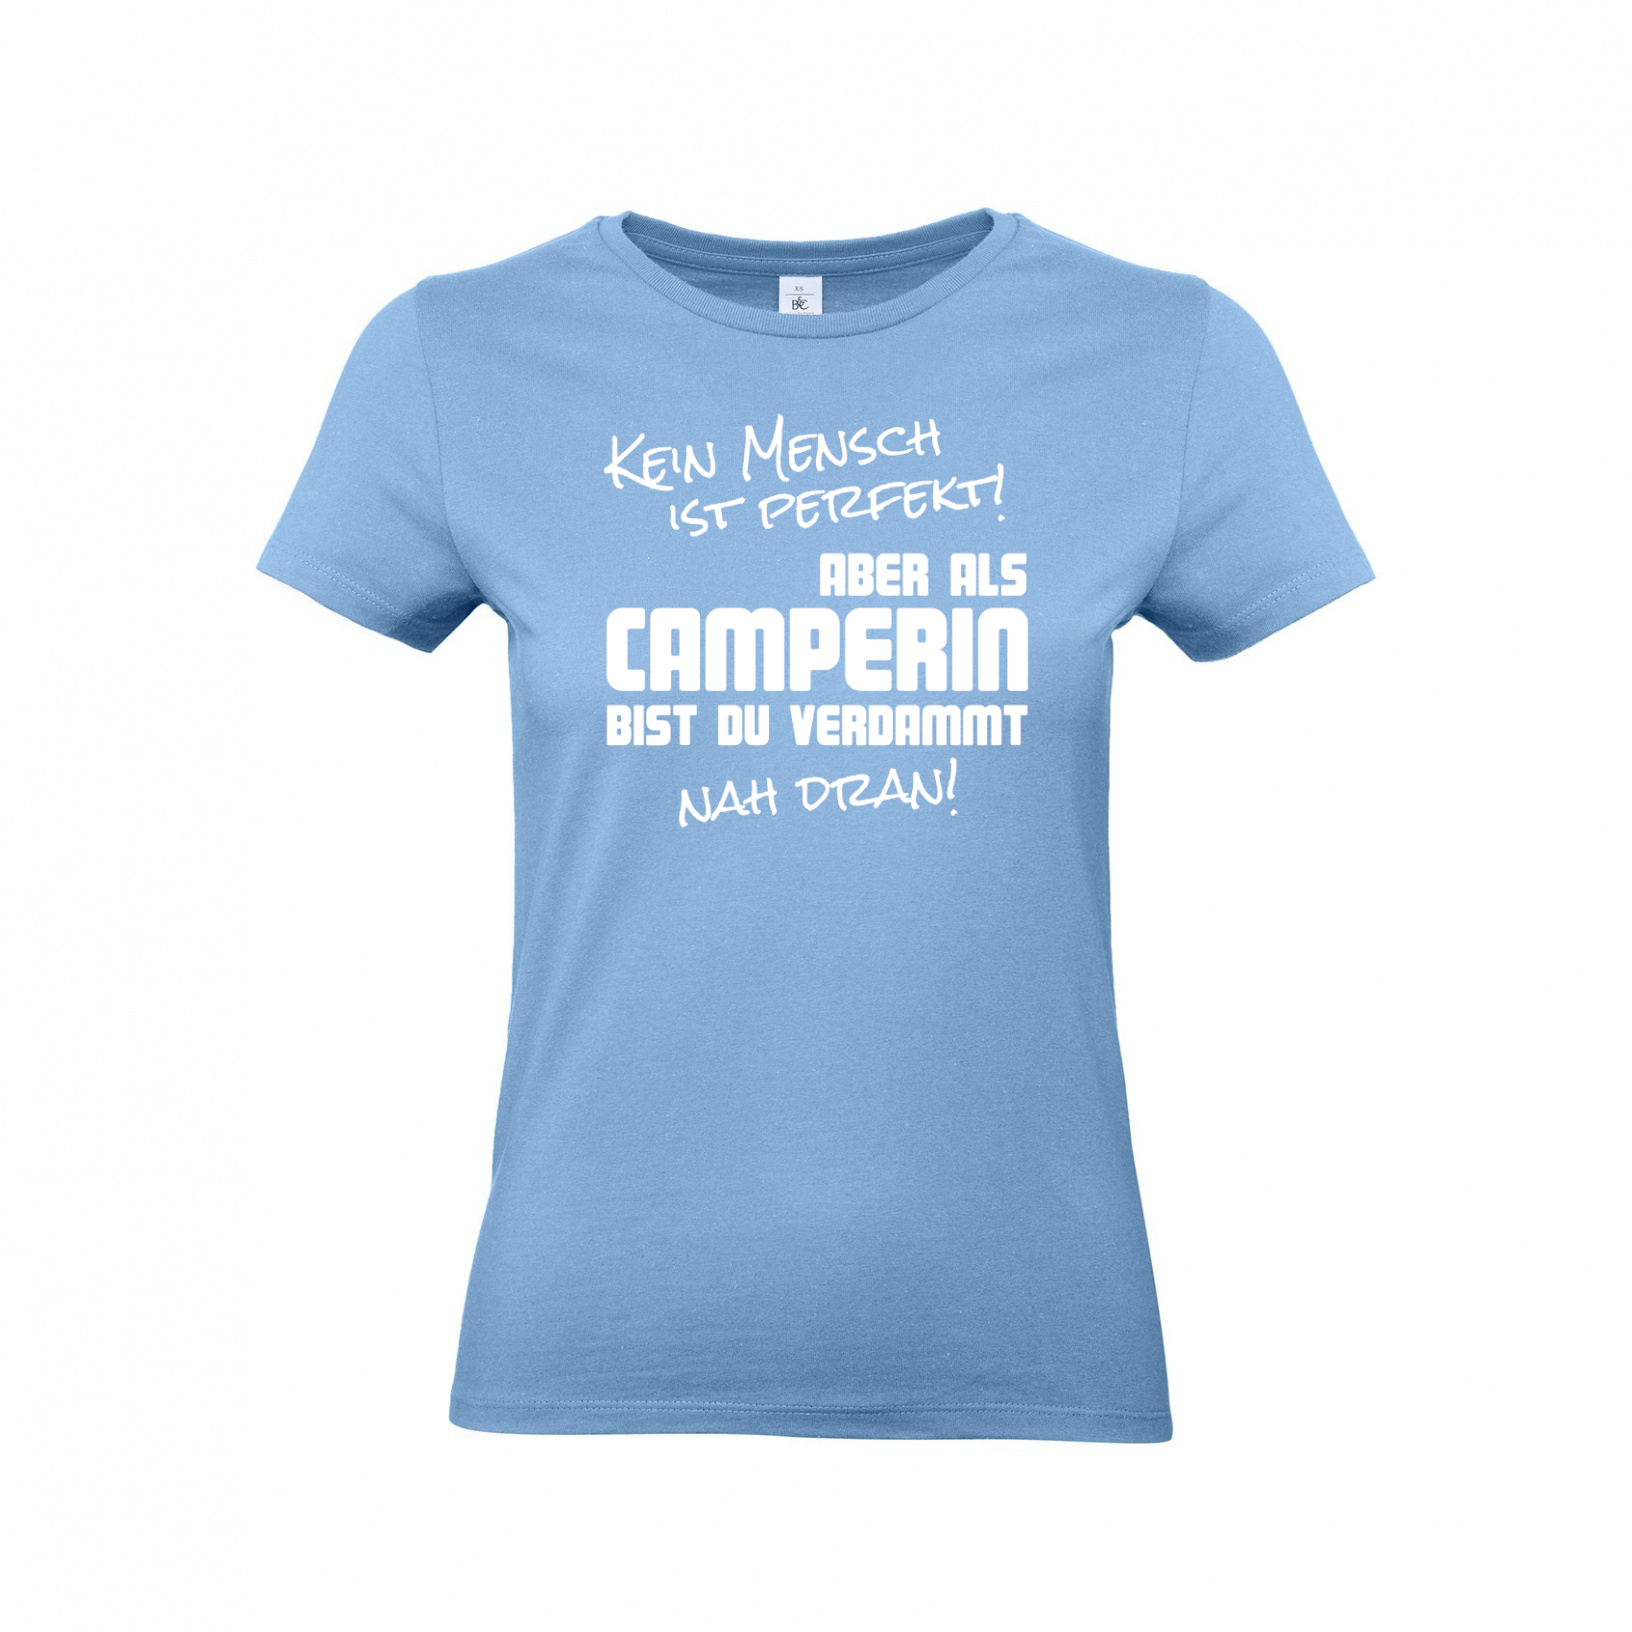 Kein Mensch ist perfekt, aber als Camper... - Camping T-Shirt für Frauen